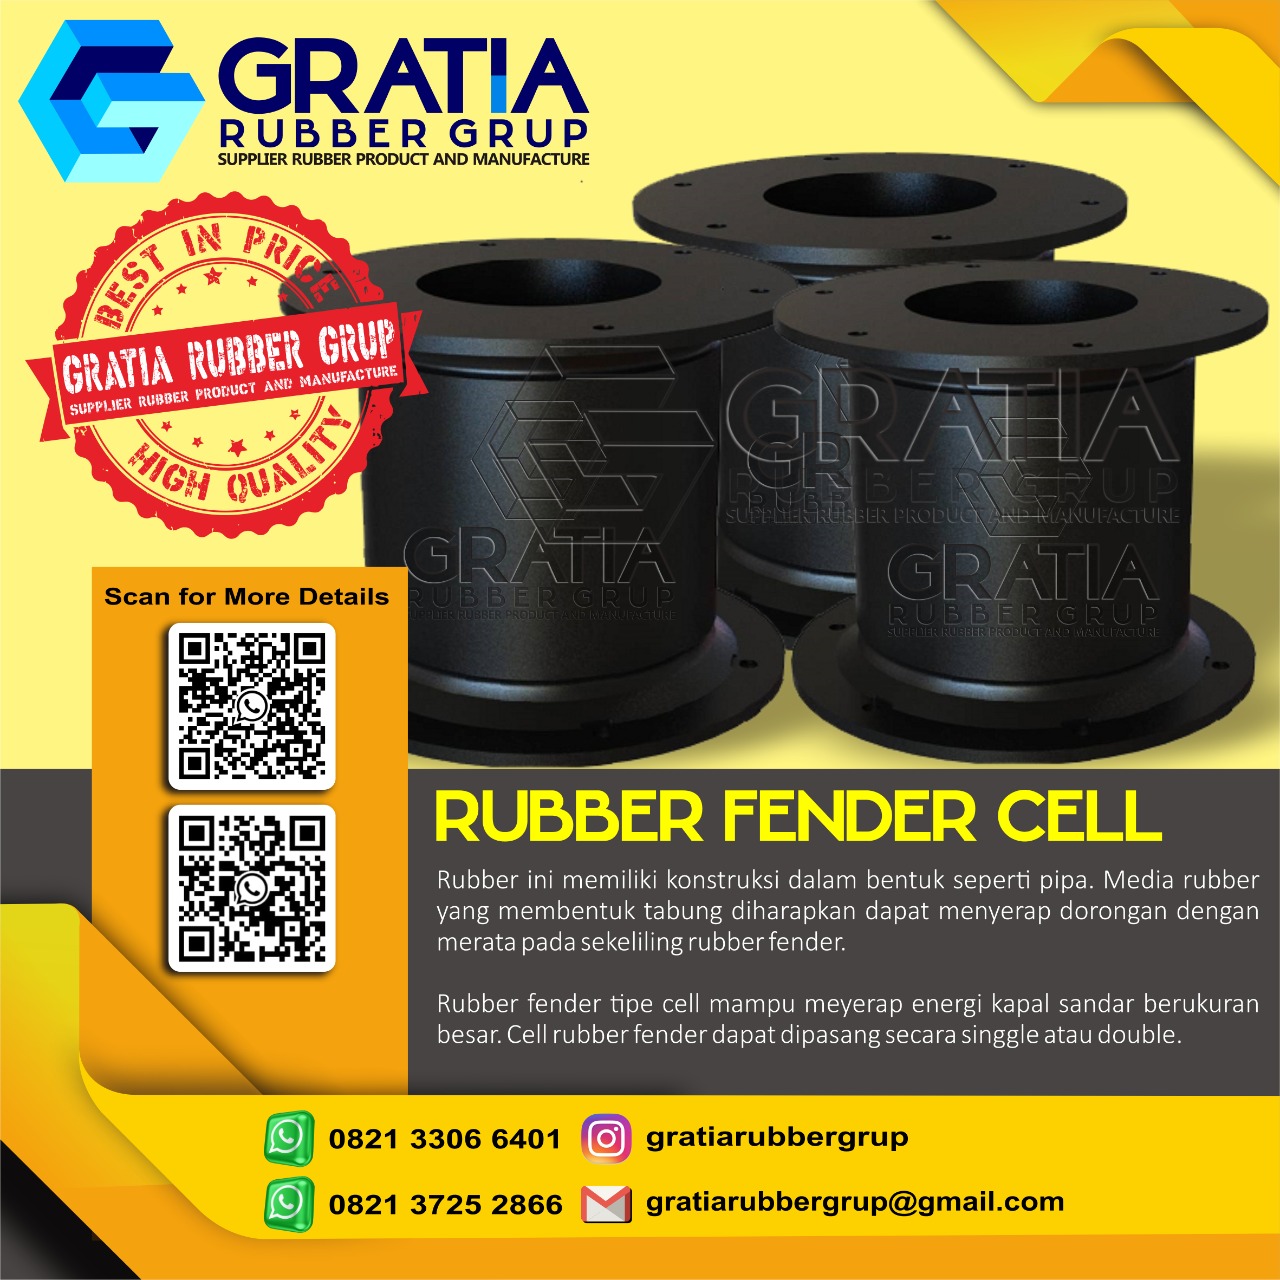 Distributor Rubber Fender Murah Dan Berkualitas  Melayani Pengiriman Ke Jakarta Timur Hub 0821 3306 0461